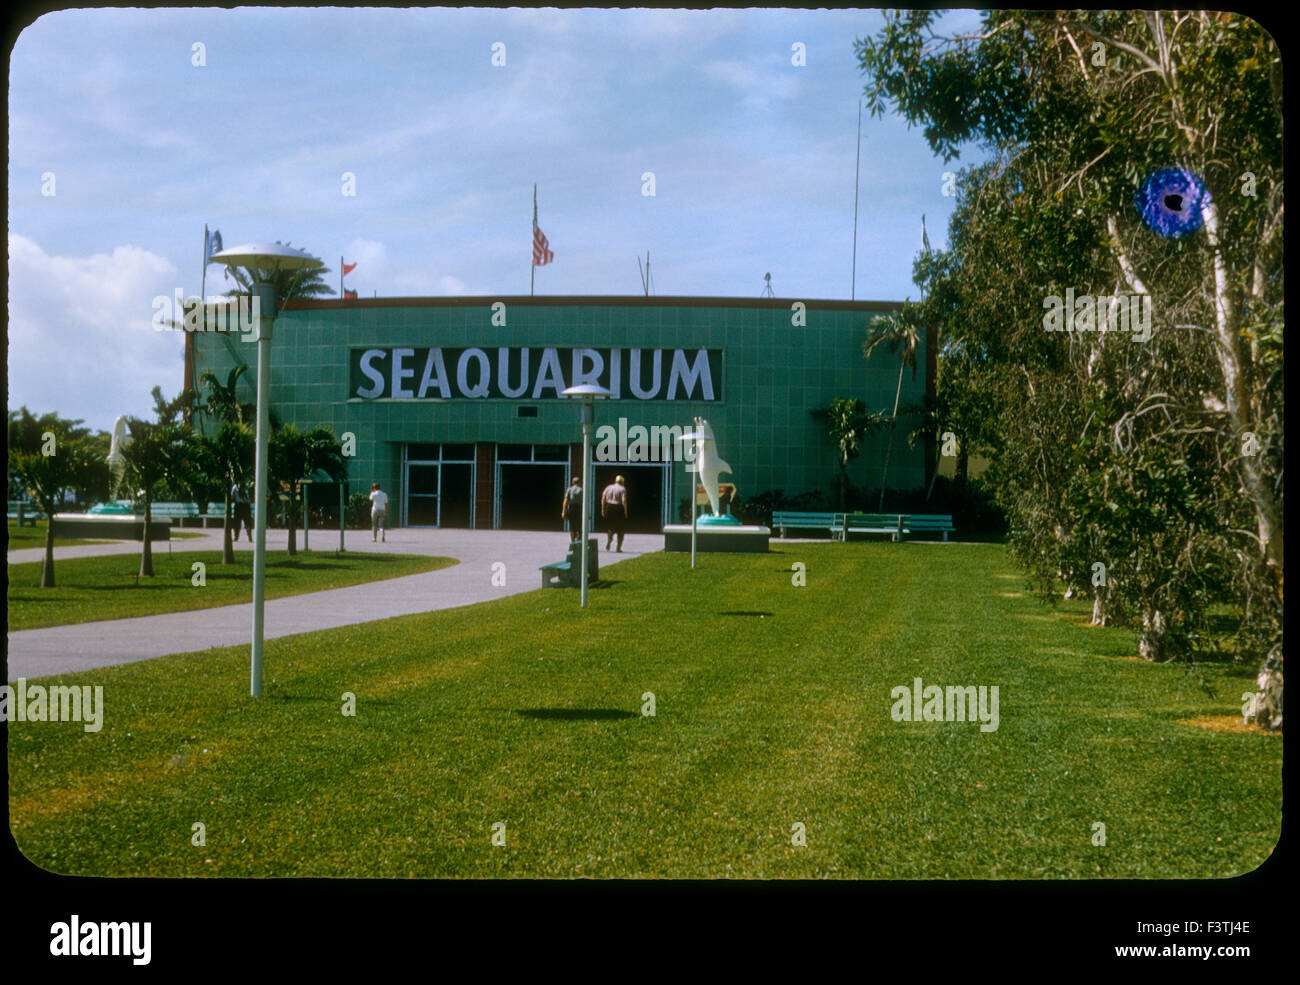 Seaquarium exterior. 1960. Miami Seaquarium es una de 38 acres (15 hectáreas) oceanario, situado en la isla de Virginia Key Biscayne Bay, en el Condado de Miami-Dade, Florida, Estados Unidos de América y está situado cerca del centro de Miami. Fundada en 1955, es uno de los más antiguos oceanariums en los Estados Unidos. Foto de stock